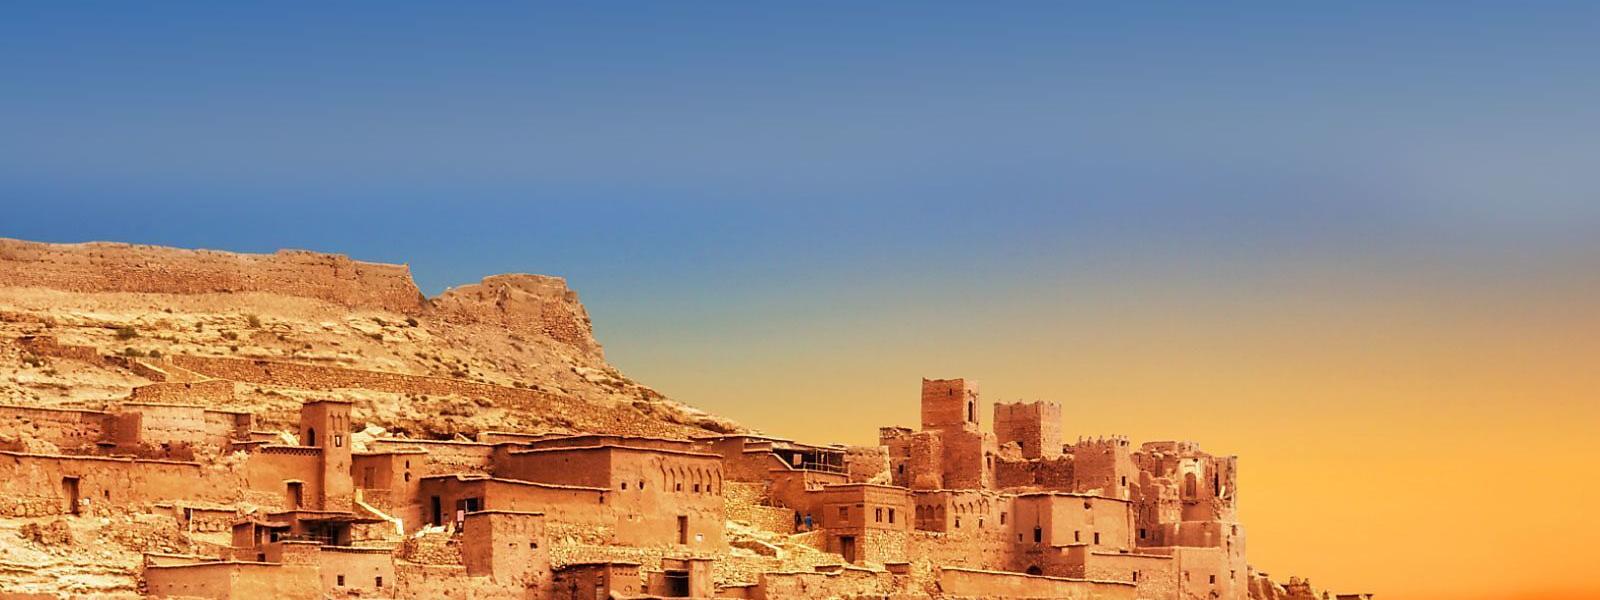 Luxus Ferienhäuser und Ferienwohnungen in Marokko - BELLEVUE Ferienhaus